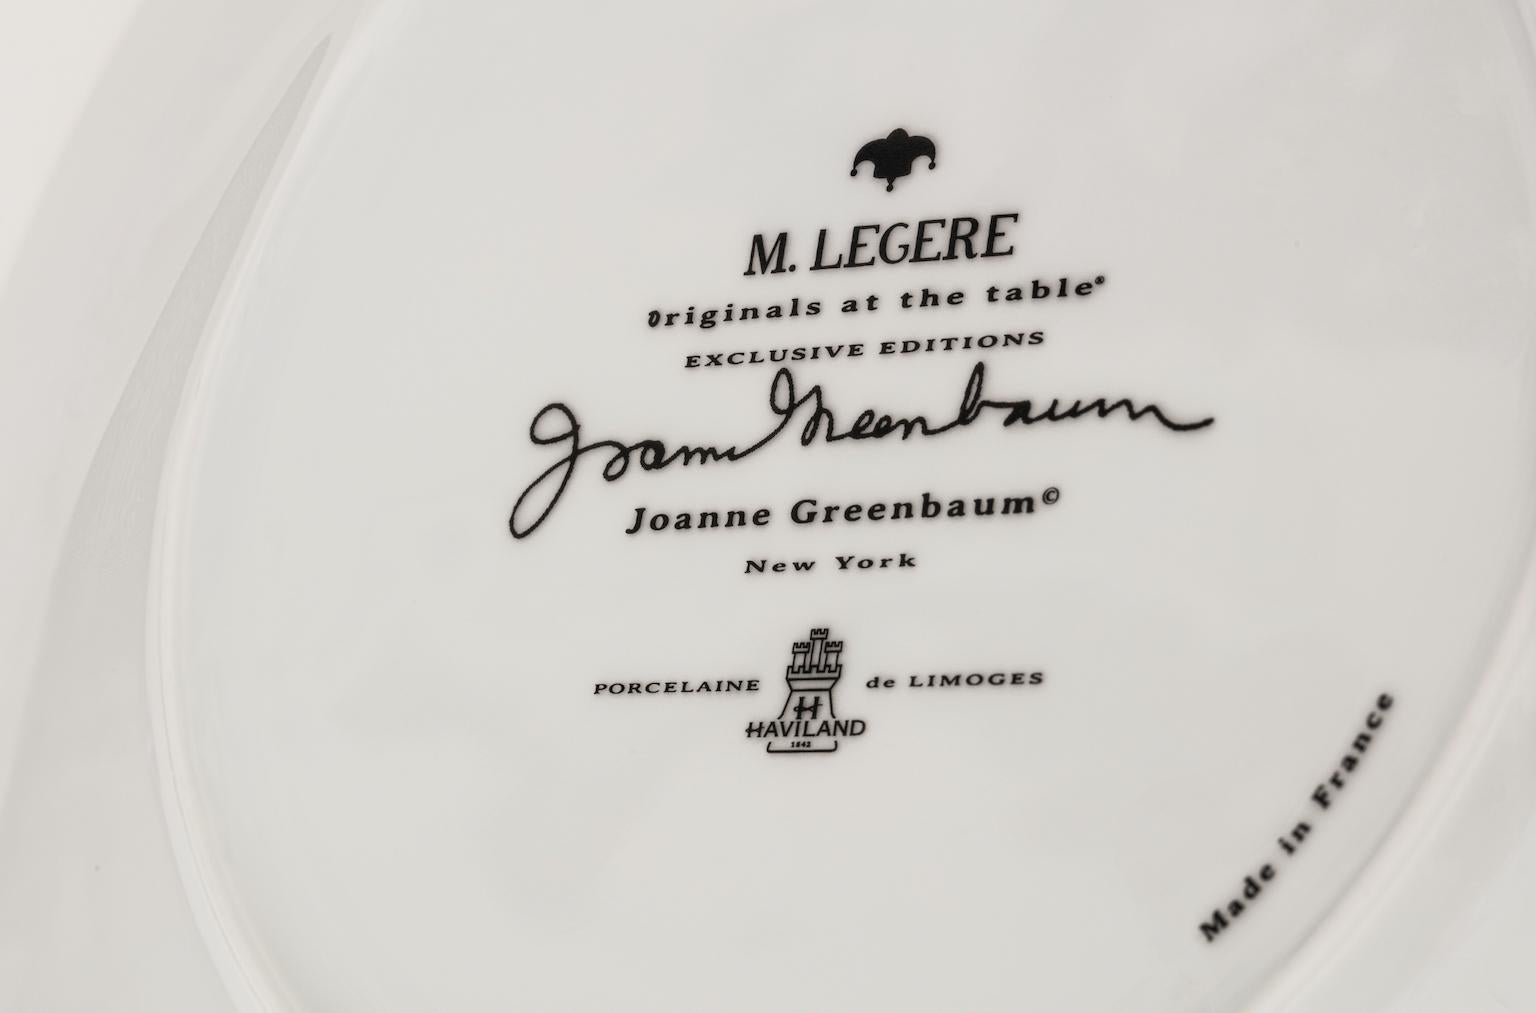 Dieser Dessertteller aus weißem Limoges-Porzellan zeigt ein abstraktes Design in Delfter Blau, das von der abstrakten New Yorker Künstlerin Joanne Greenbaum exklusiv für M.Legere entworfen wurde und spülmaschinenfest ist. Haviland, die führende